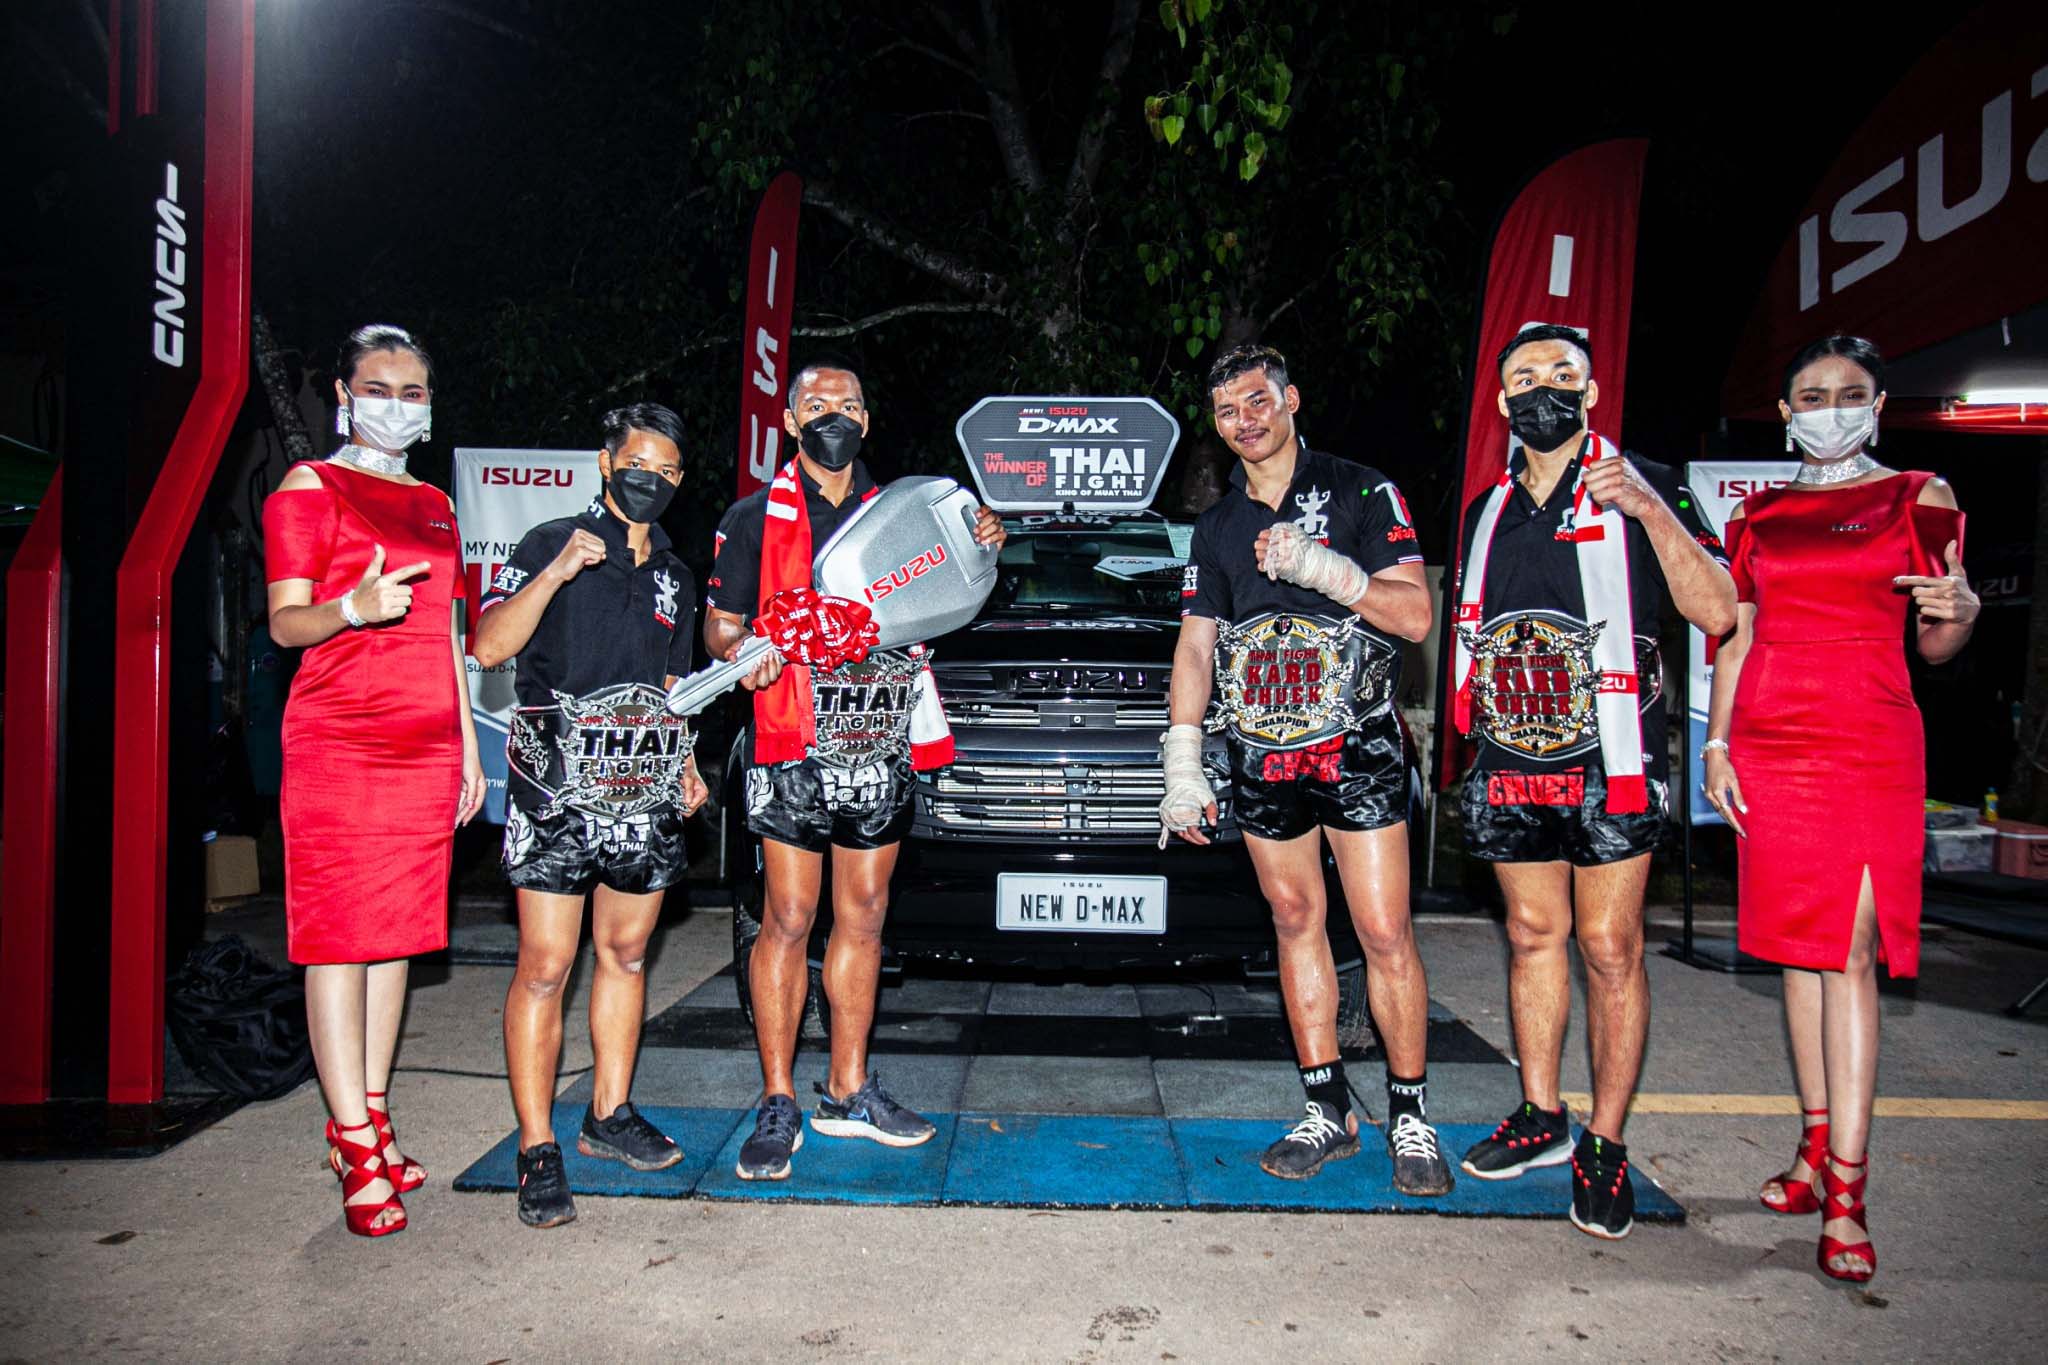 อีซูซุแสดงความยินดีกับ 4 สุดยอดนักชกไทยคว้าแชมป์ THAI FIGHT 2020 รับรางวัลรถปิกอัพ “ออลนิว อีซูซุดีแมคซ์” และเงินสดรวมมูลค่า 1,400,000 บาท